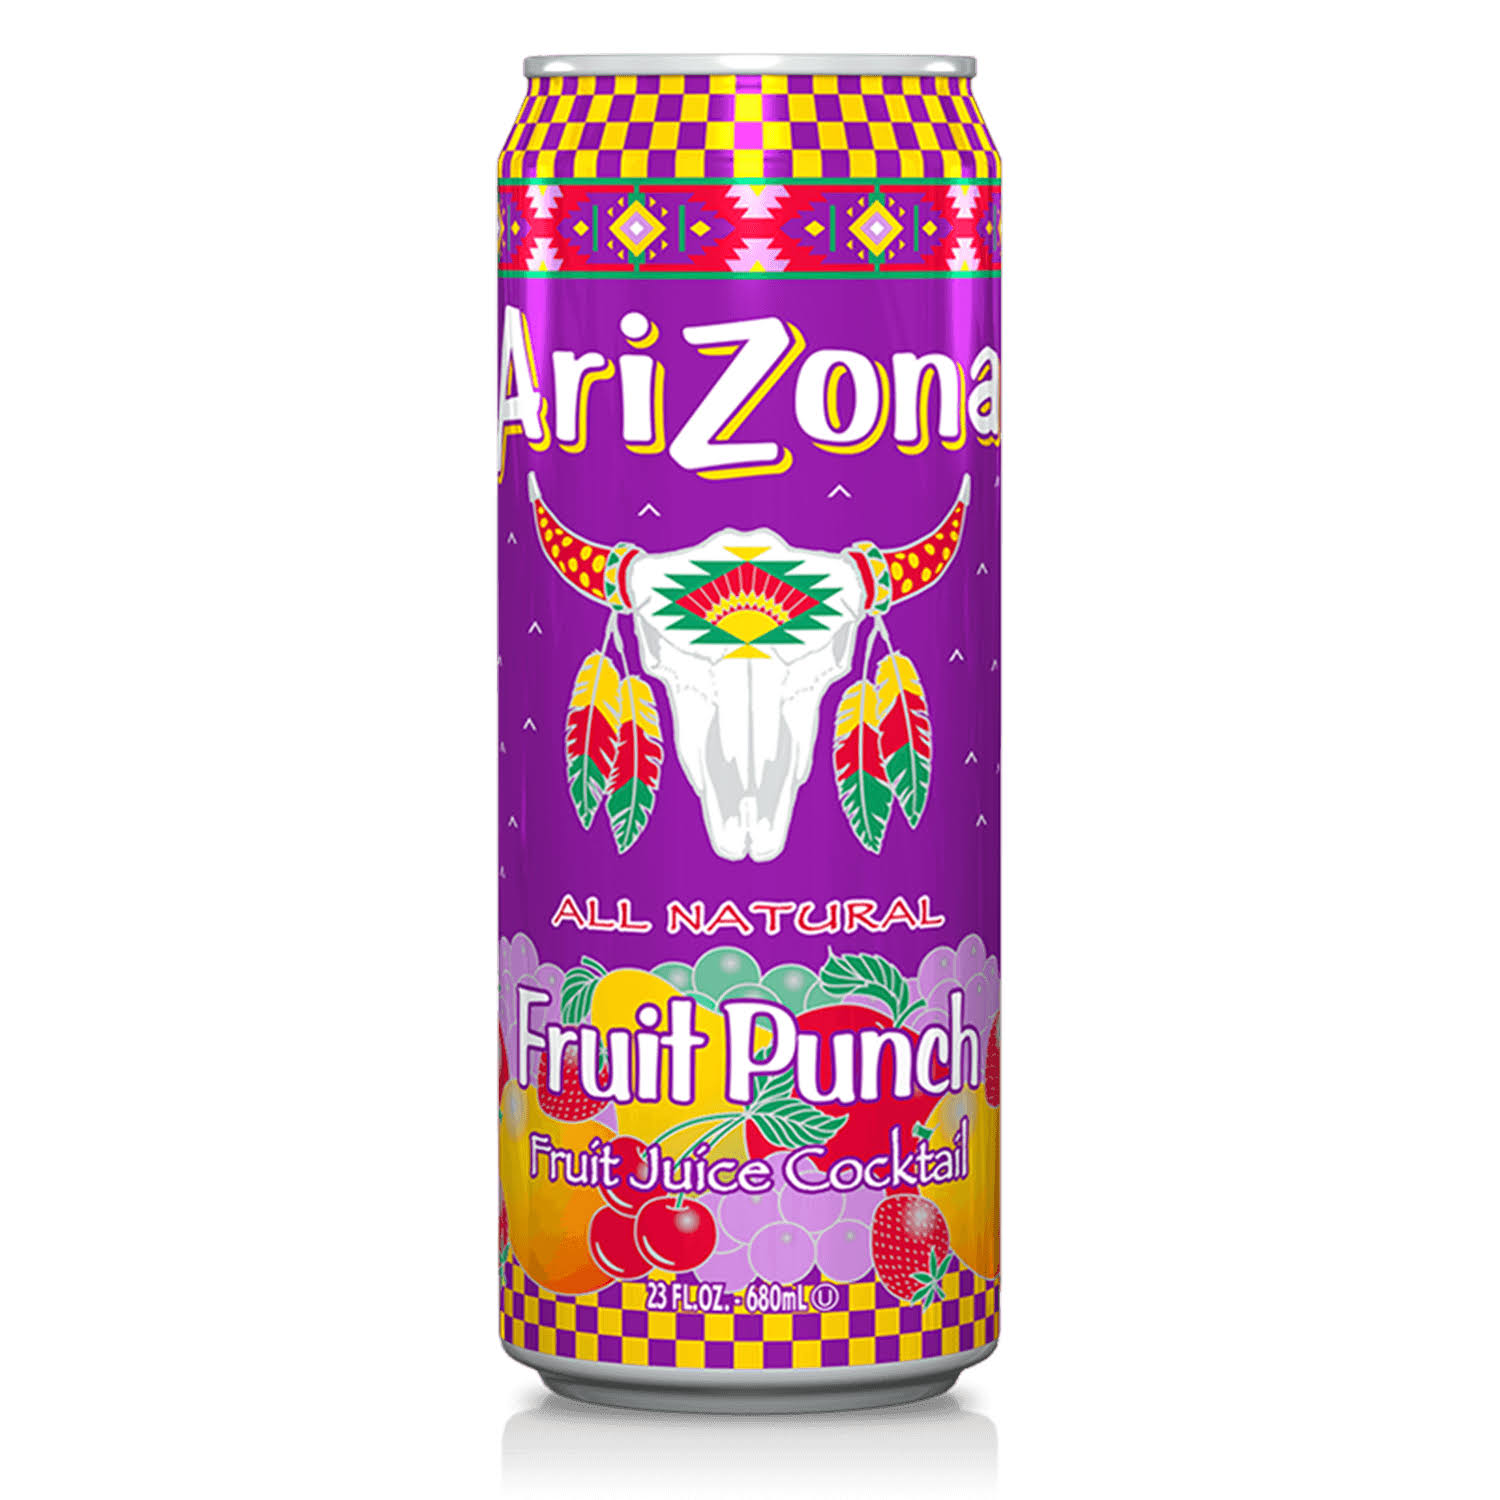 Arizona Fruit Juice Cocktail - Fruit Punch, 23oz